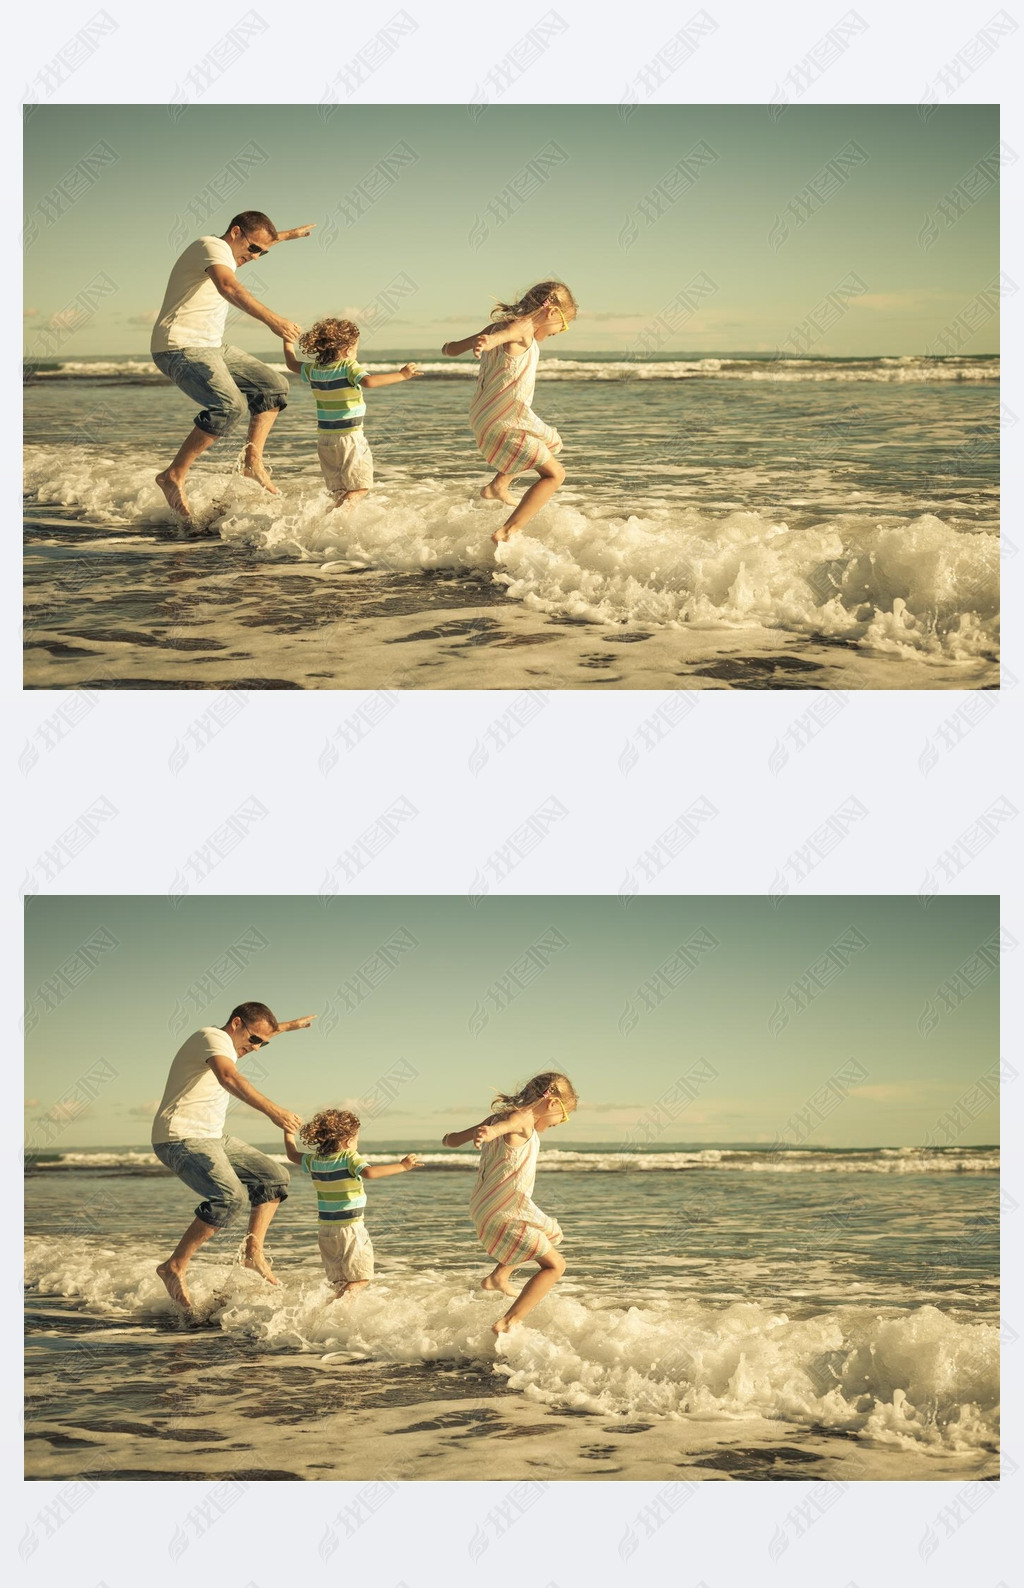 far, dotter och son spelar p? stranden p? dagarna